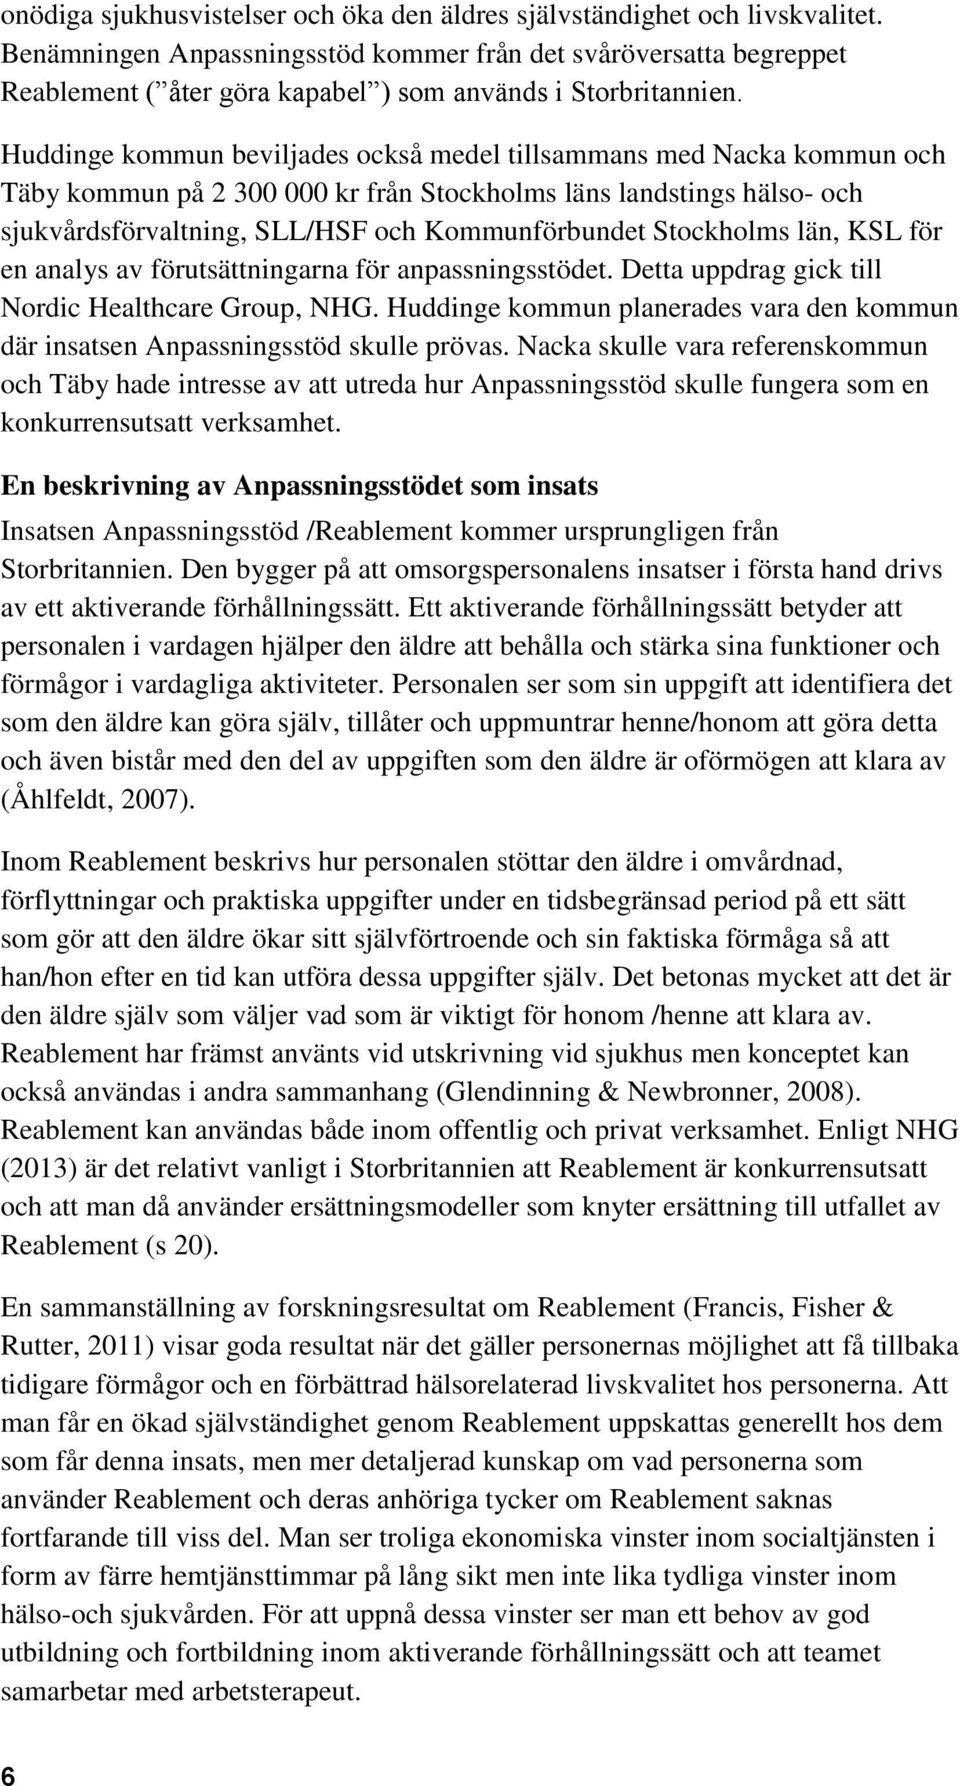 Huddinge kommun beviljades också medel tillsammans med Nacka kommun och Täby kommun på 2 300 000 kr från Stockholms läns landstings hälso- och sjukvårdsförvaltning, SLL/HSF och Kommunförbundet